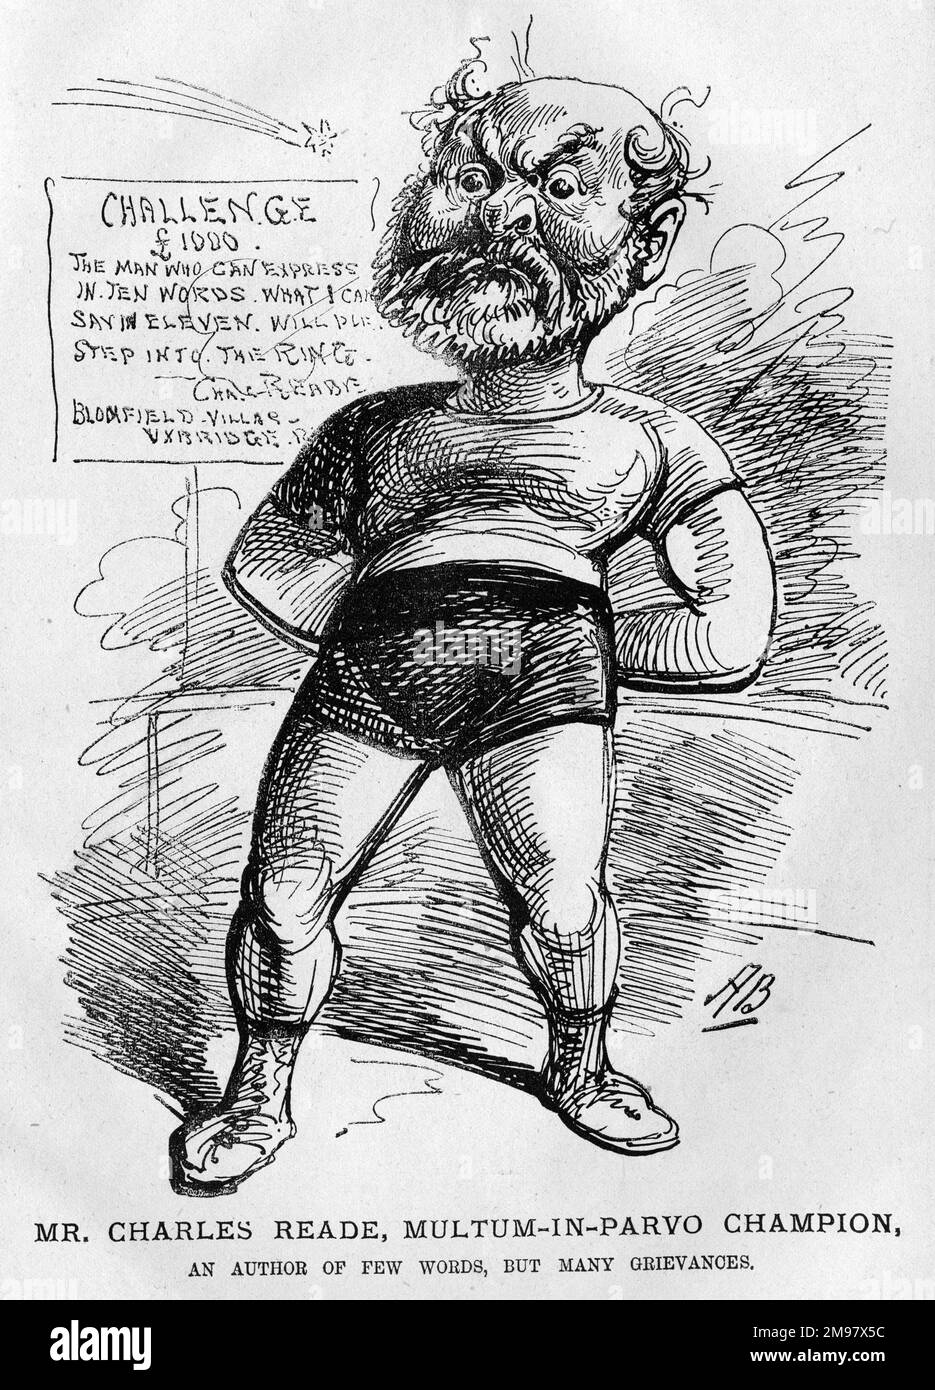 Cartoon von Charles Reade (1814-1884), Schriftsteller und Dramatiker. Multi-in-Parvo-Champion. Ein Autor von wenigen Worten, aber vielen Beschwerden. Stockfoto